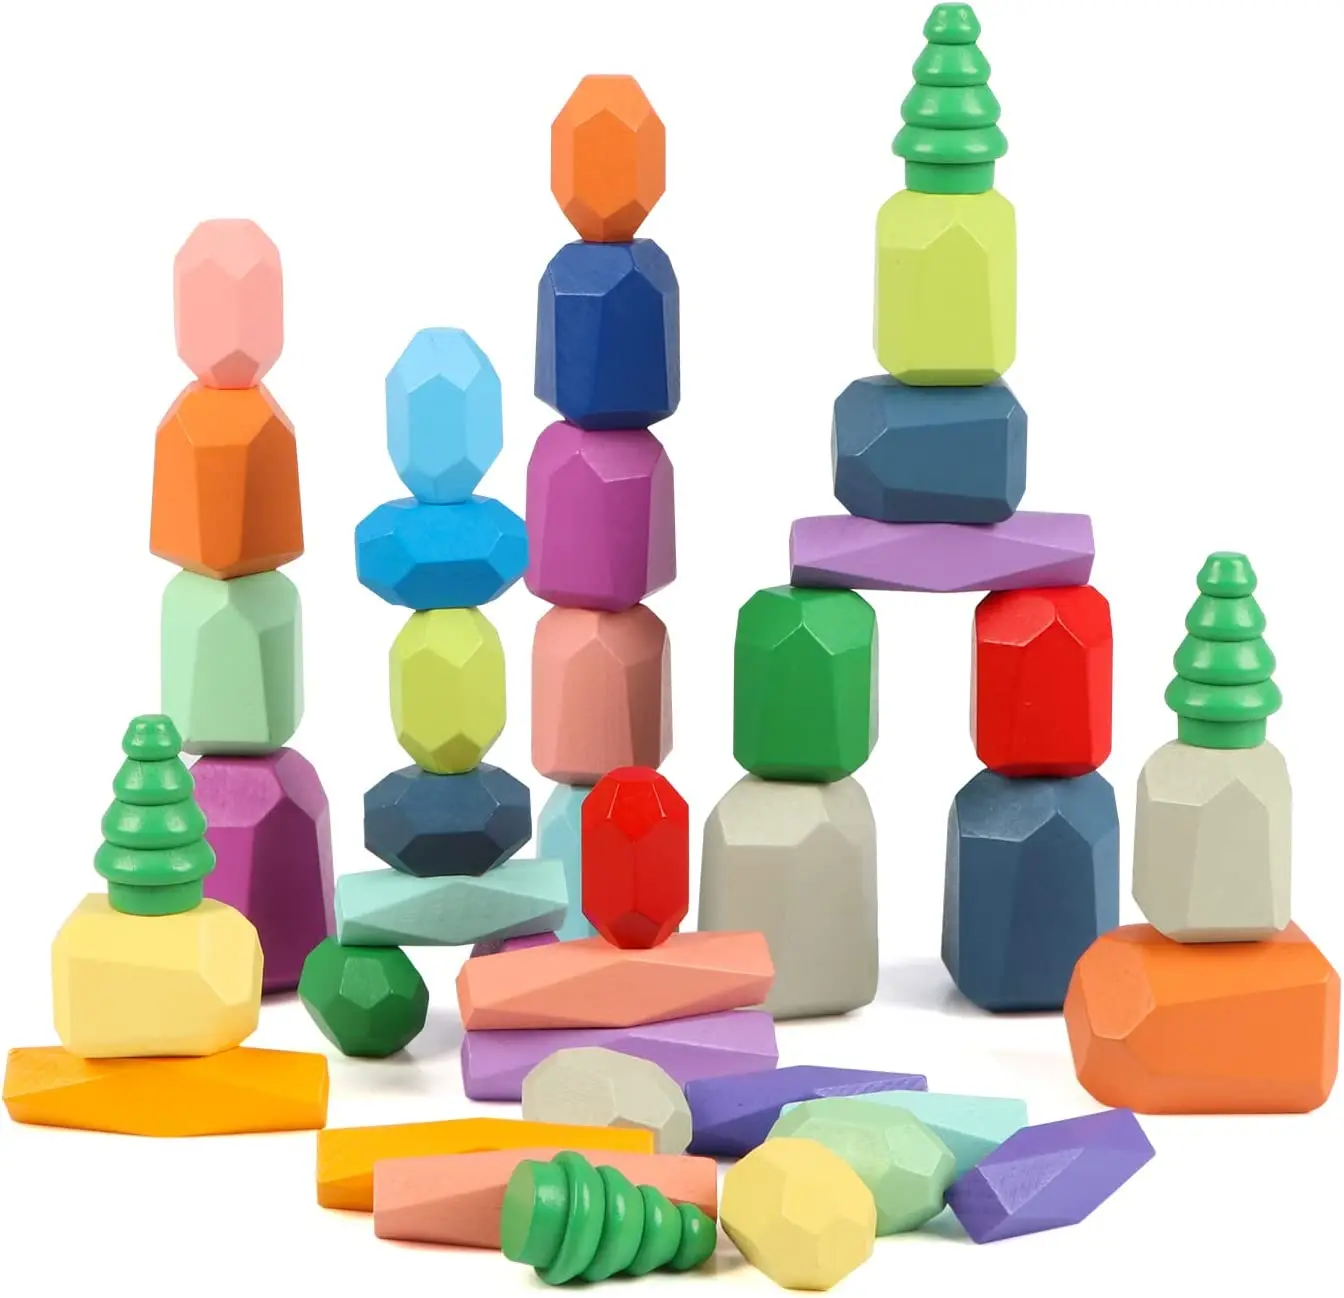 

Деревянная сортировка, штабелируемые балансирующие камни, Обучающие игрушки Монтессори для малышей, сенсорные строительные блоки, подарок